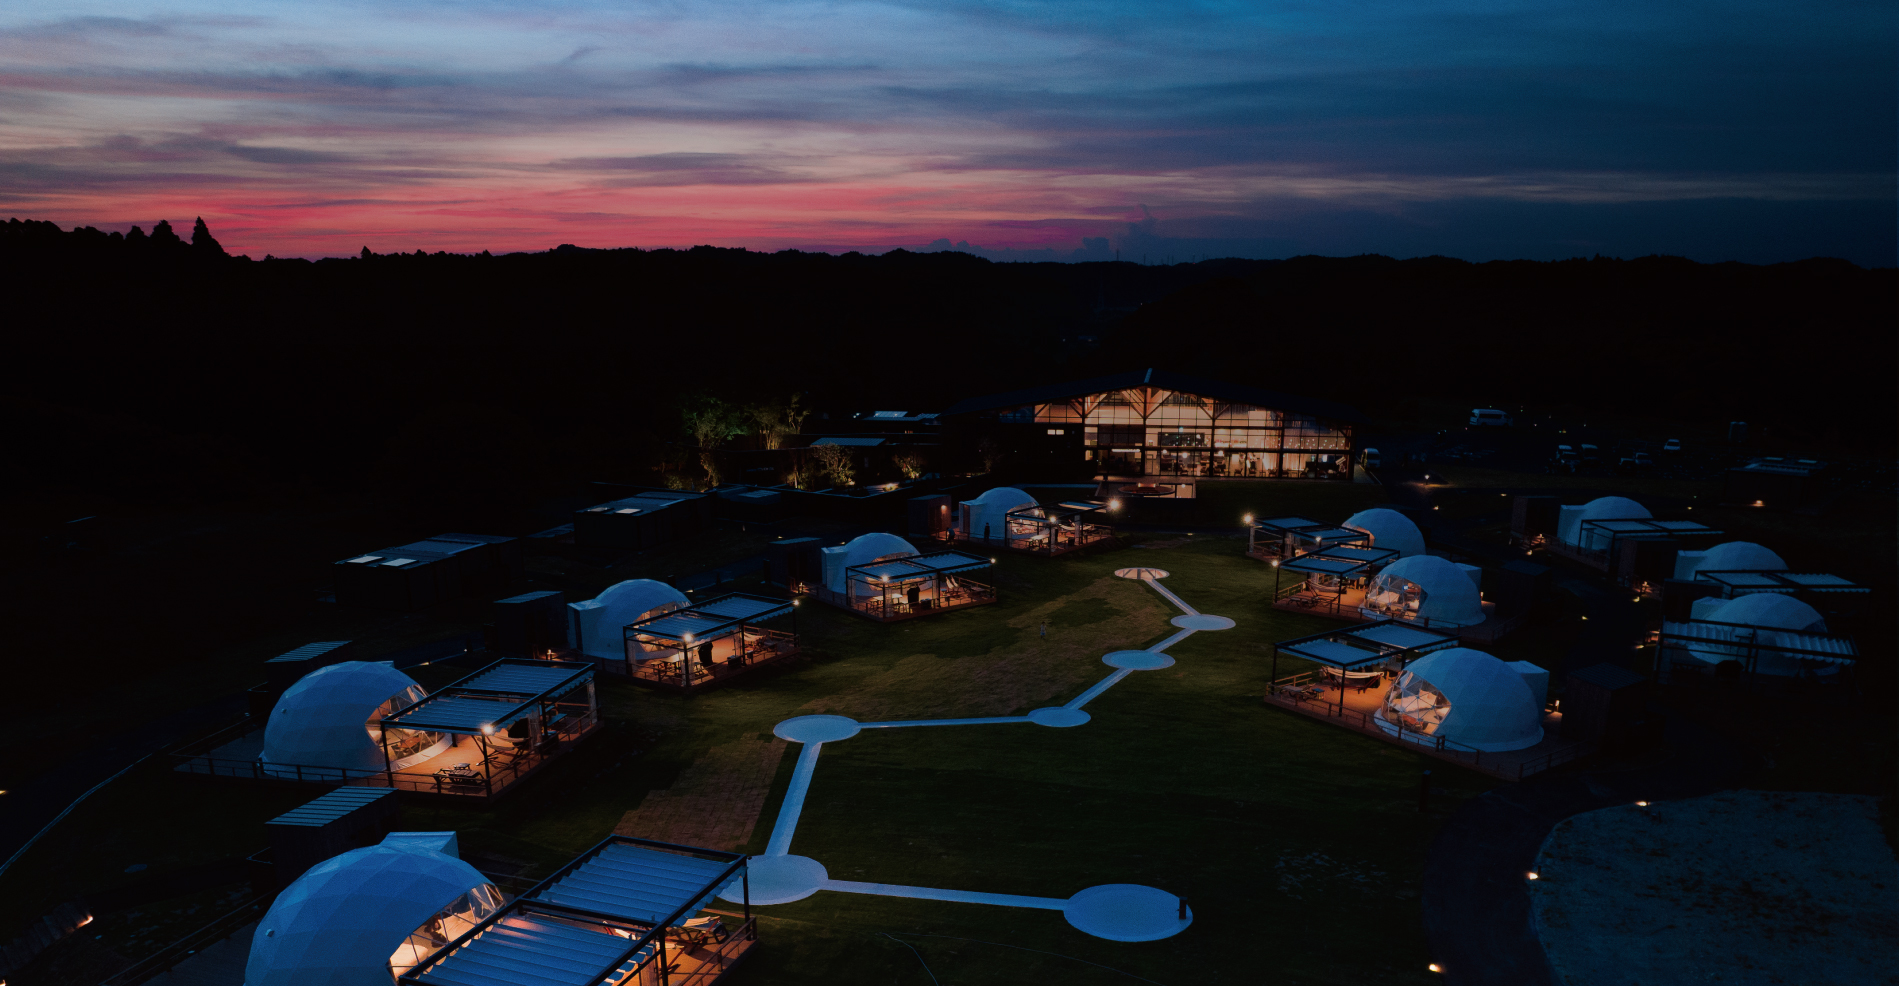 “自然”と“エシカル”が融合したグランピング施設「ISUMI Glamping Resort & Spa SOLAS」